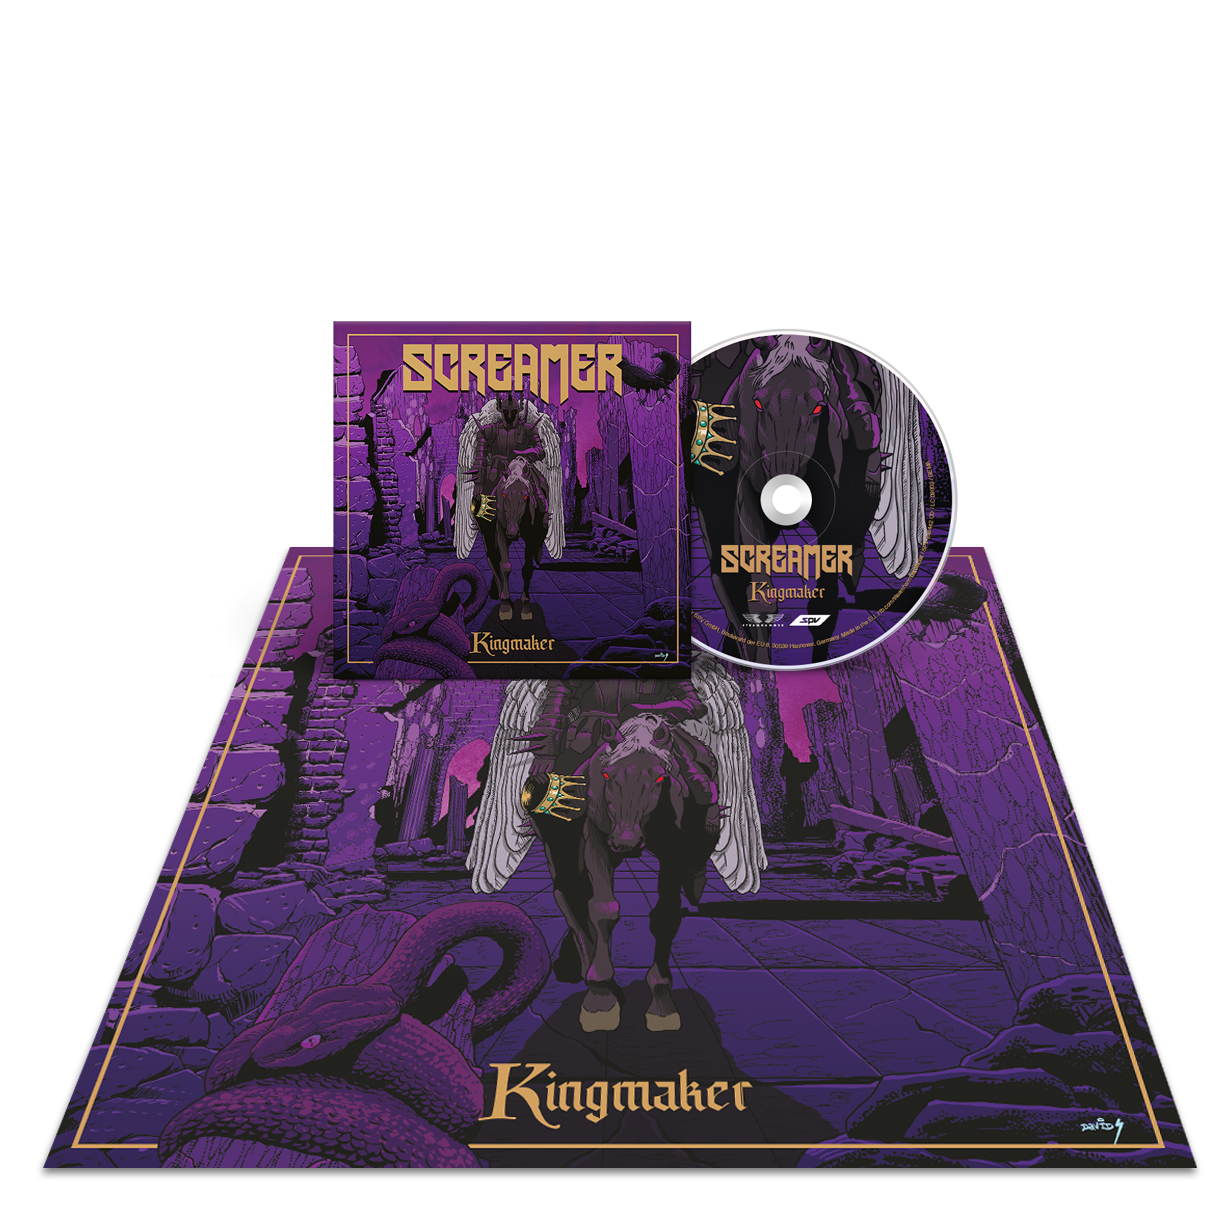 Screamer "Kingmaker" CD